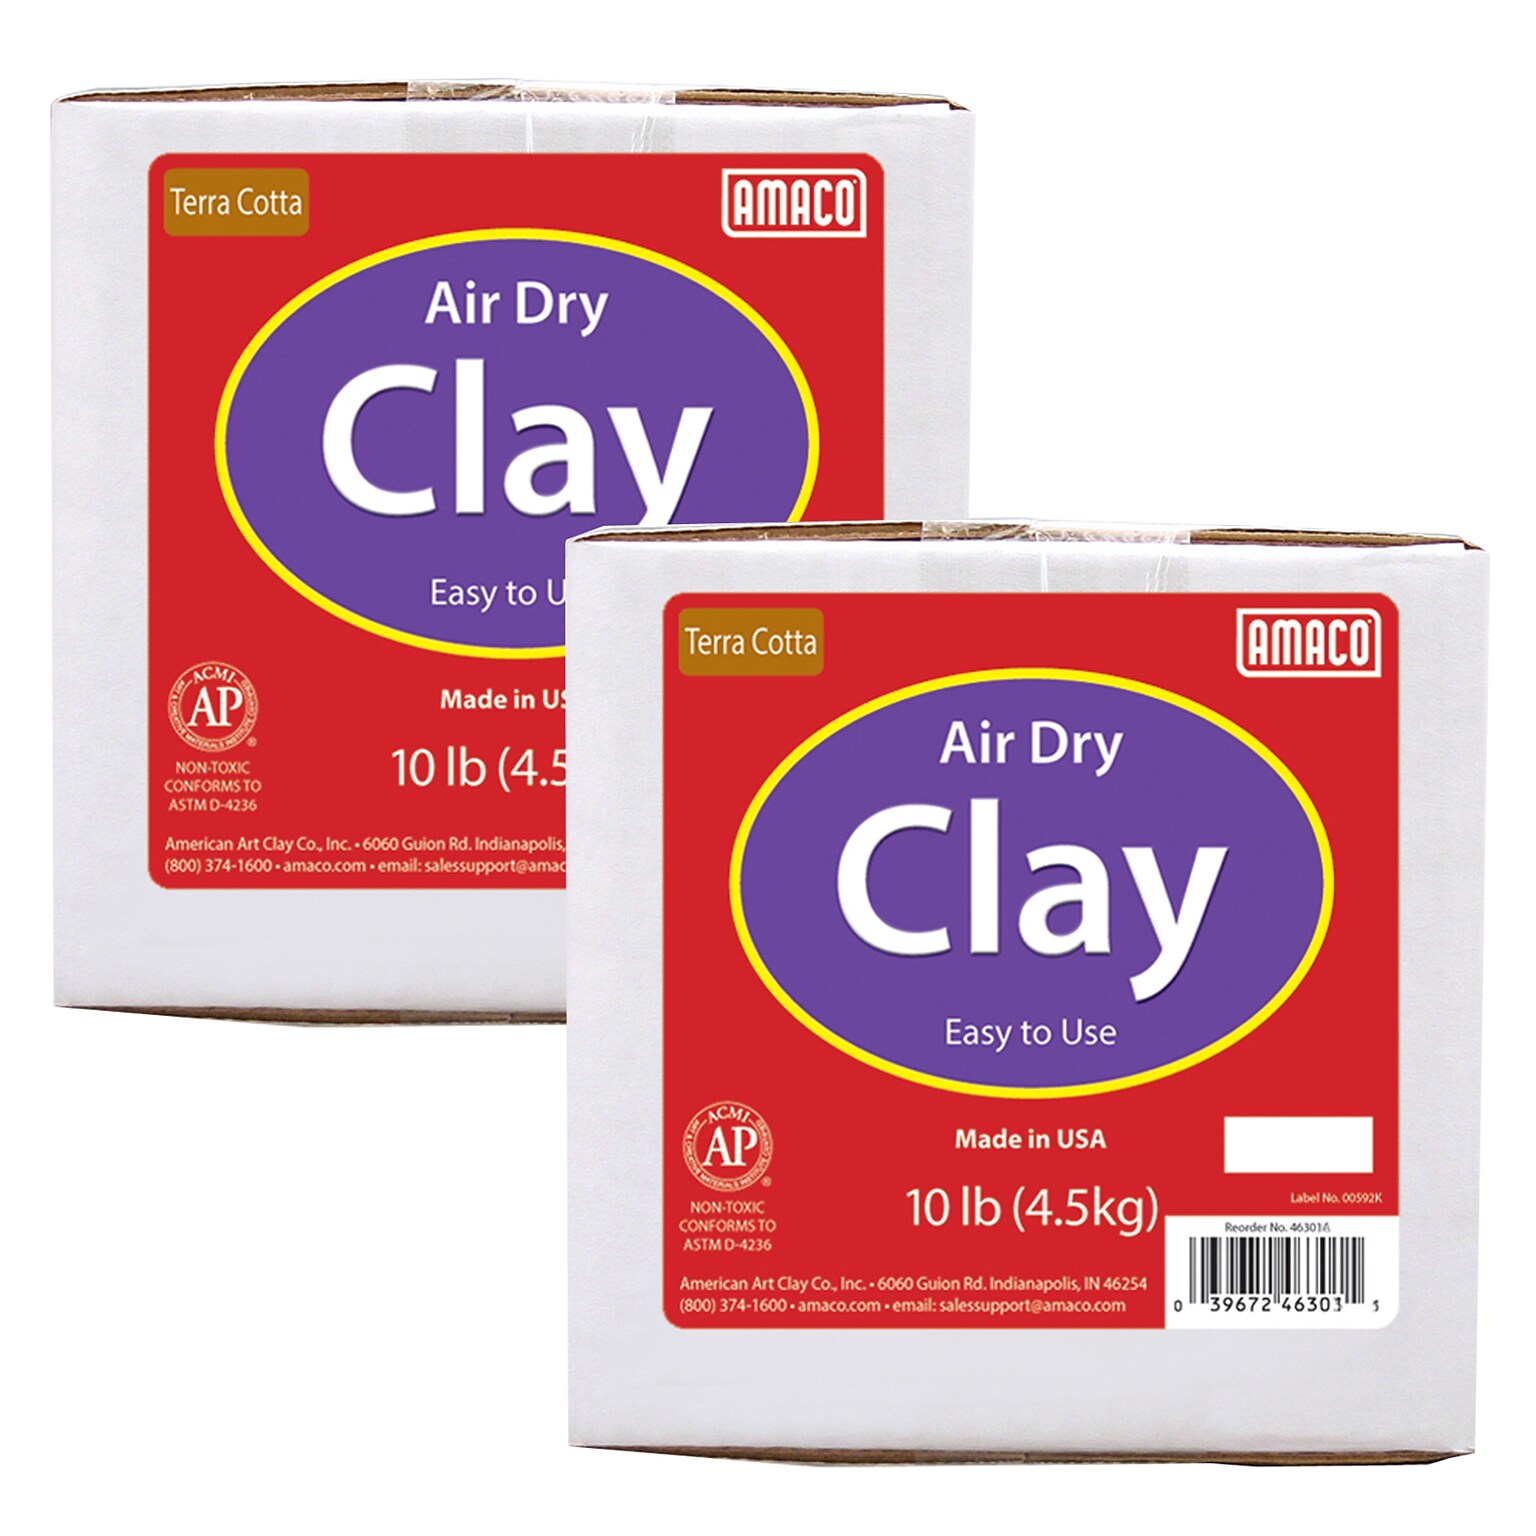 AMACO Air Dry Clay, Terra Cotta, 10 lbs. Per Box, 2 Boxes (AMA46301A-2)